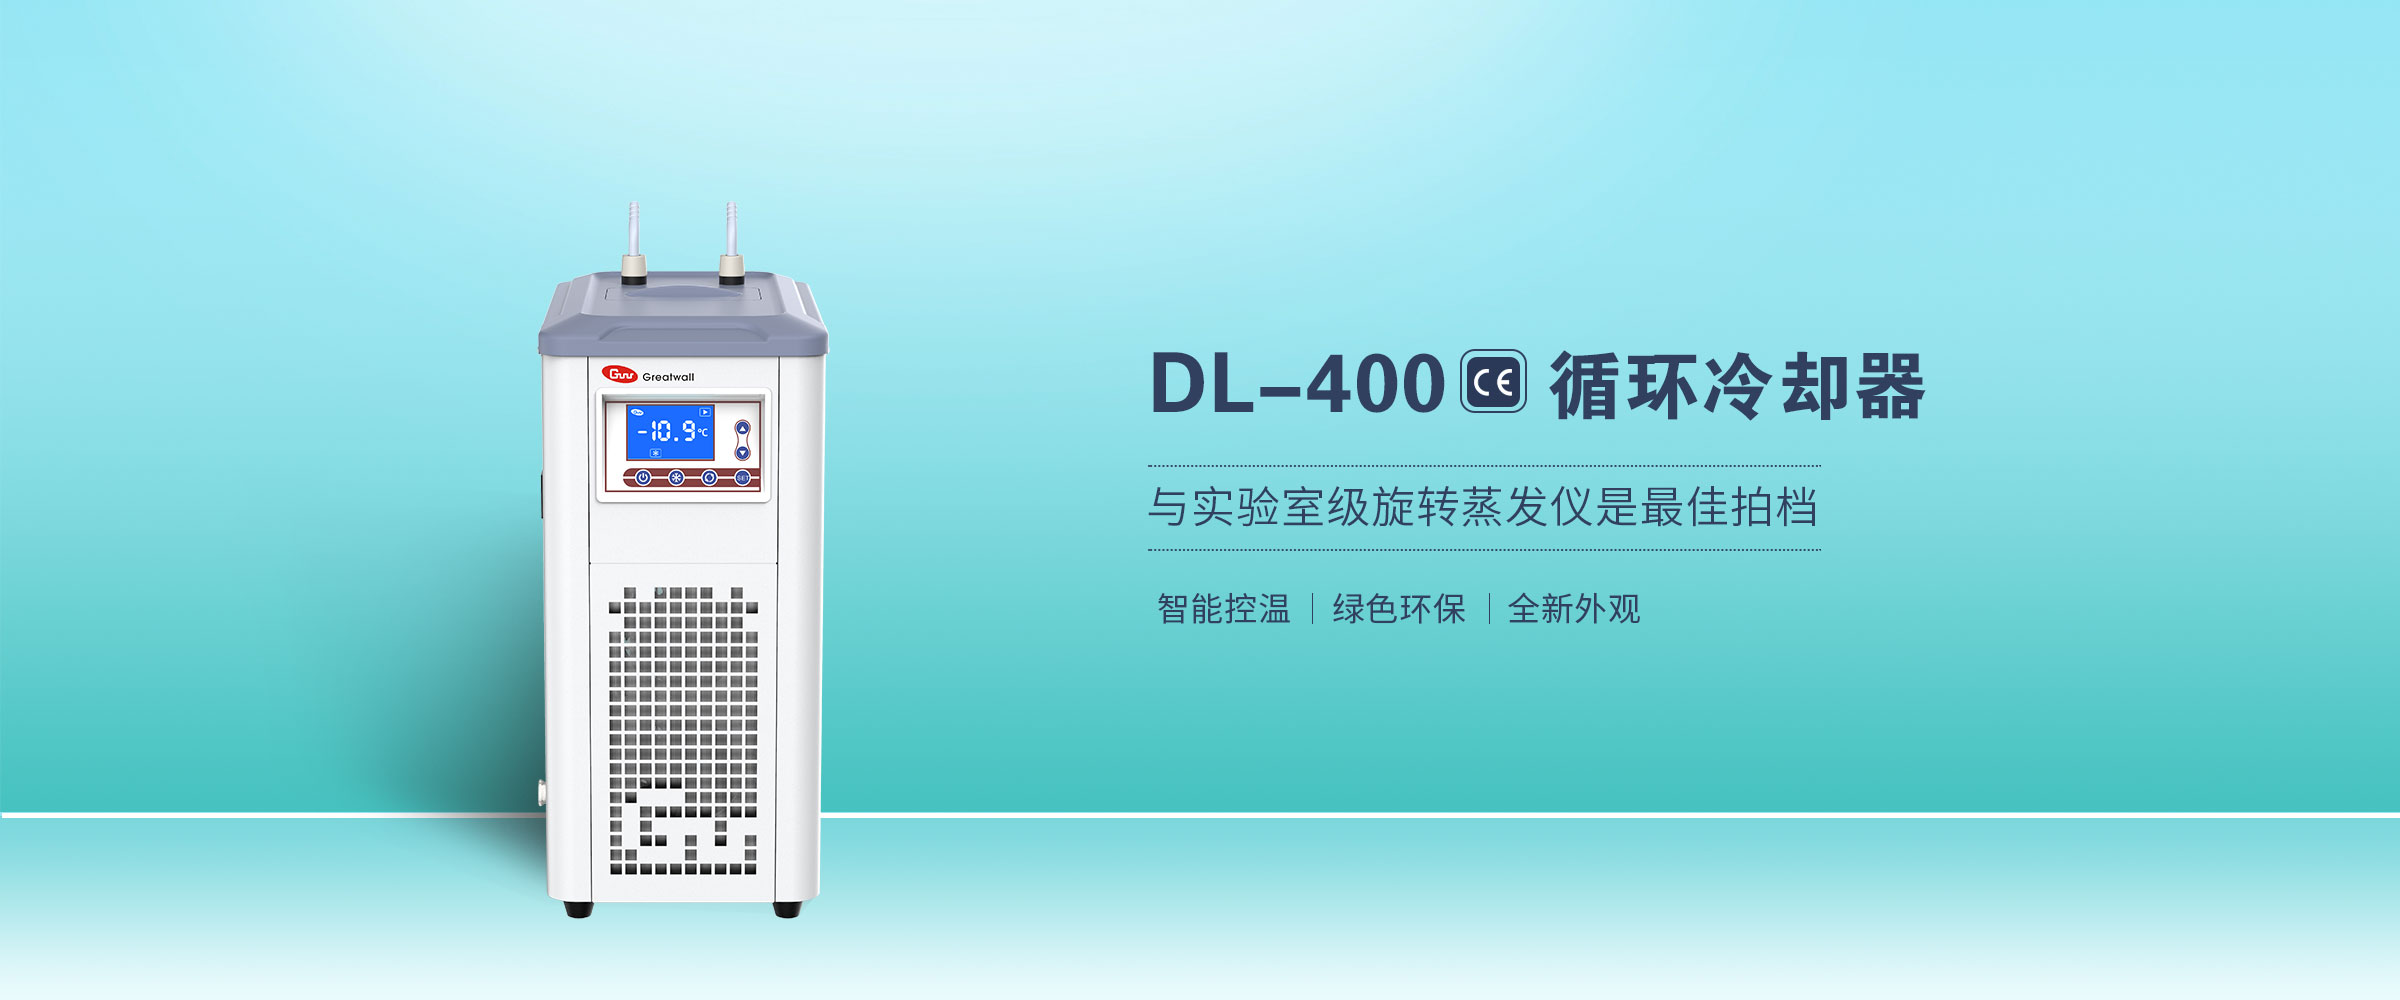 DL-400详图1